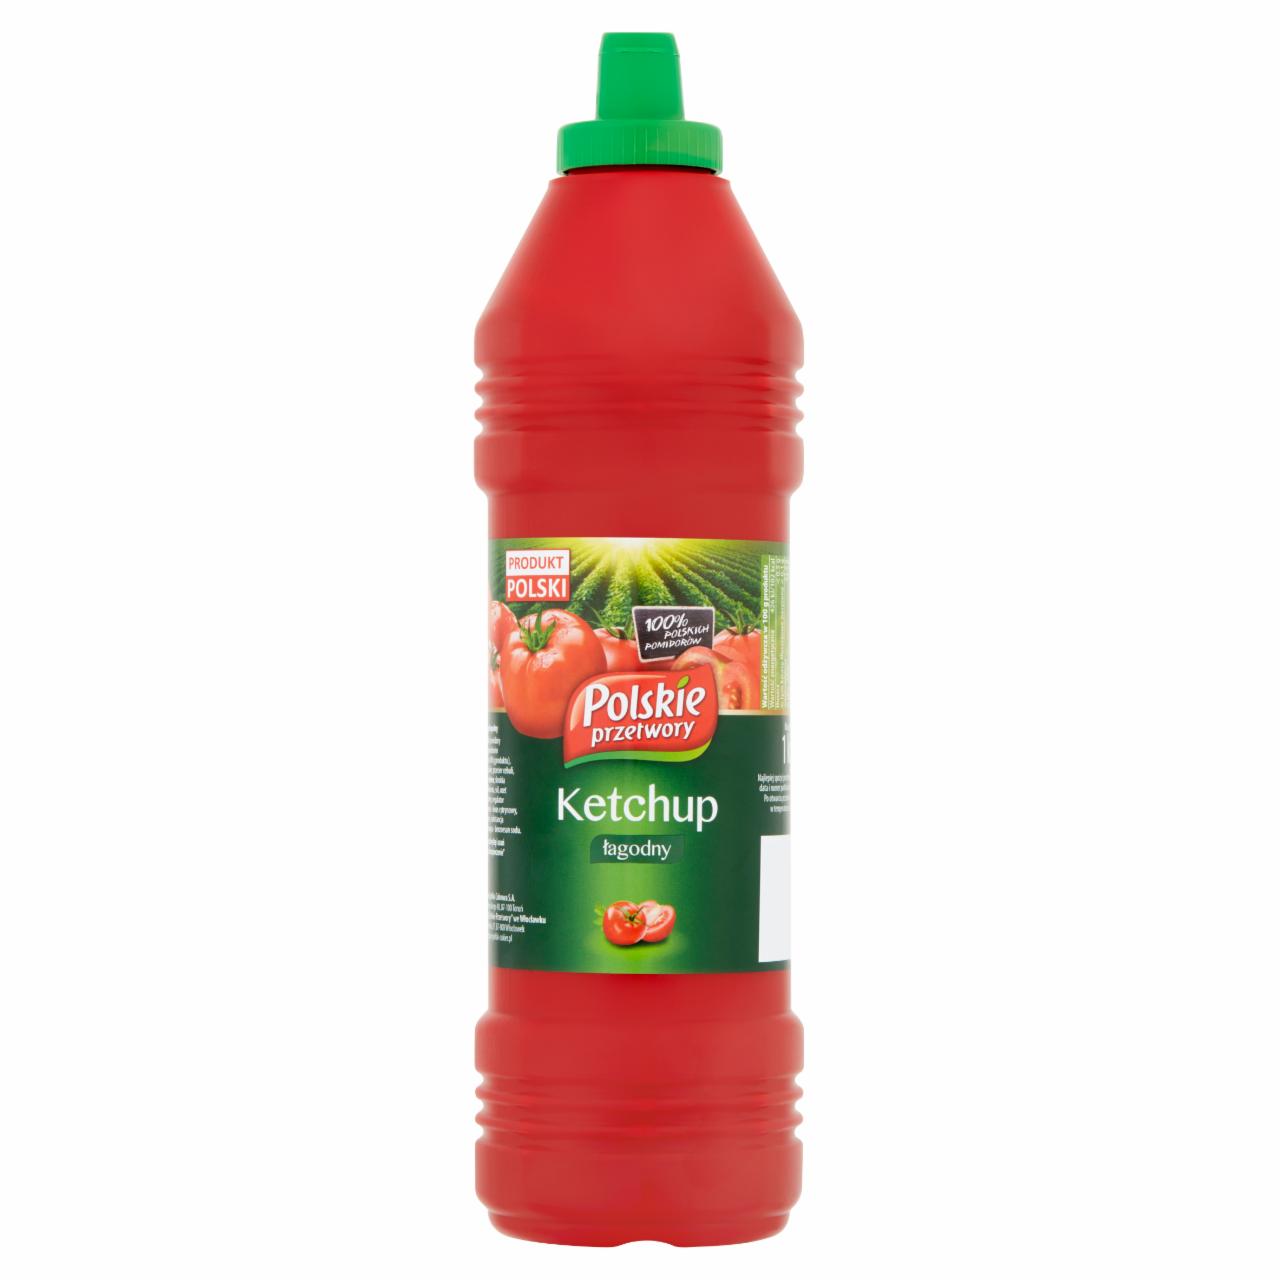 Zdjęcia - Polskie przetwory Ketchup łagodny 1 kg